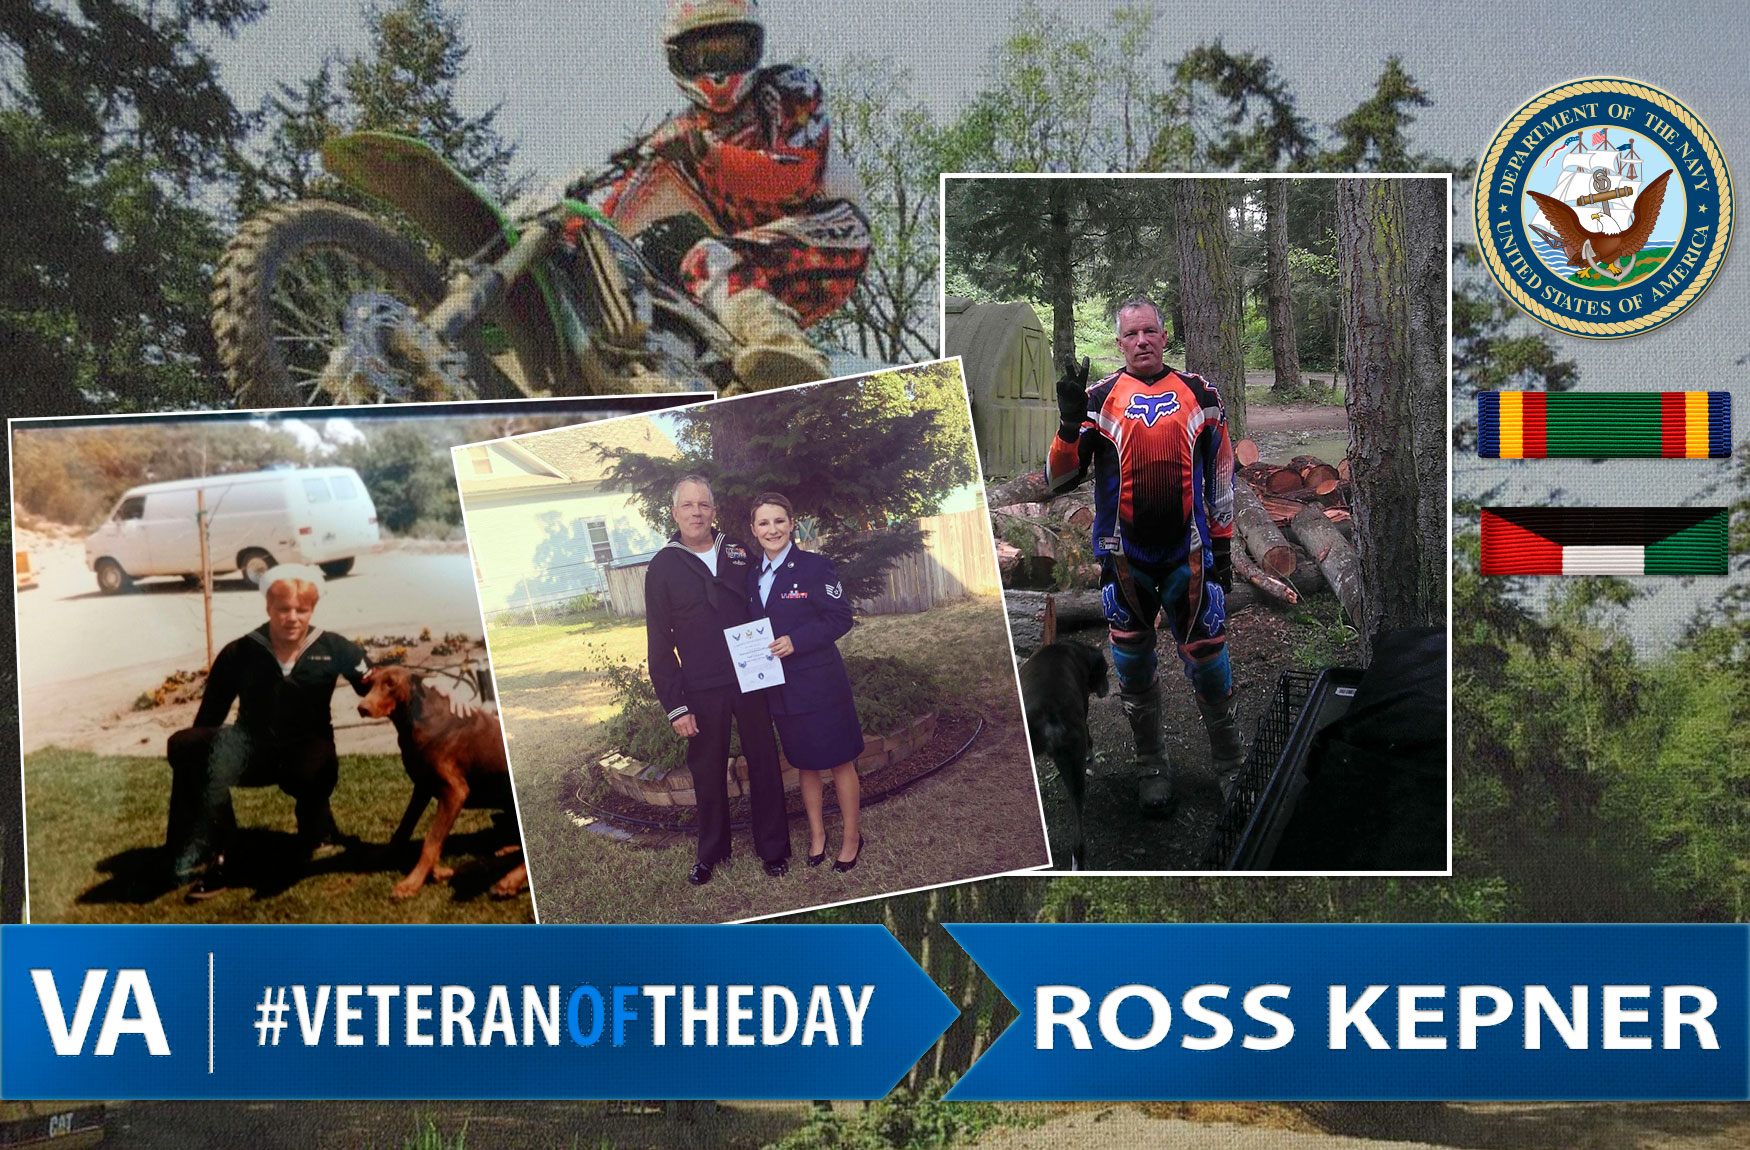 Veteran of the day Ross Kepner